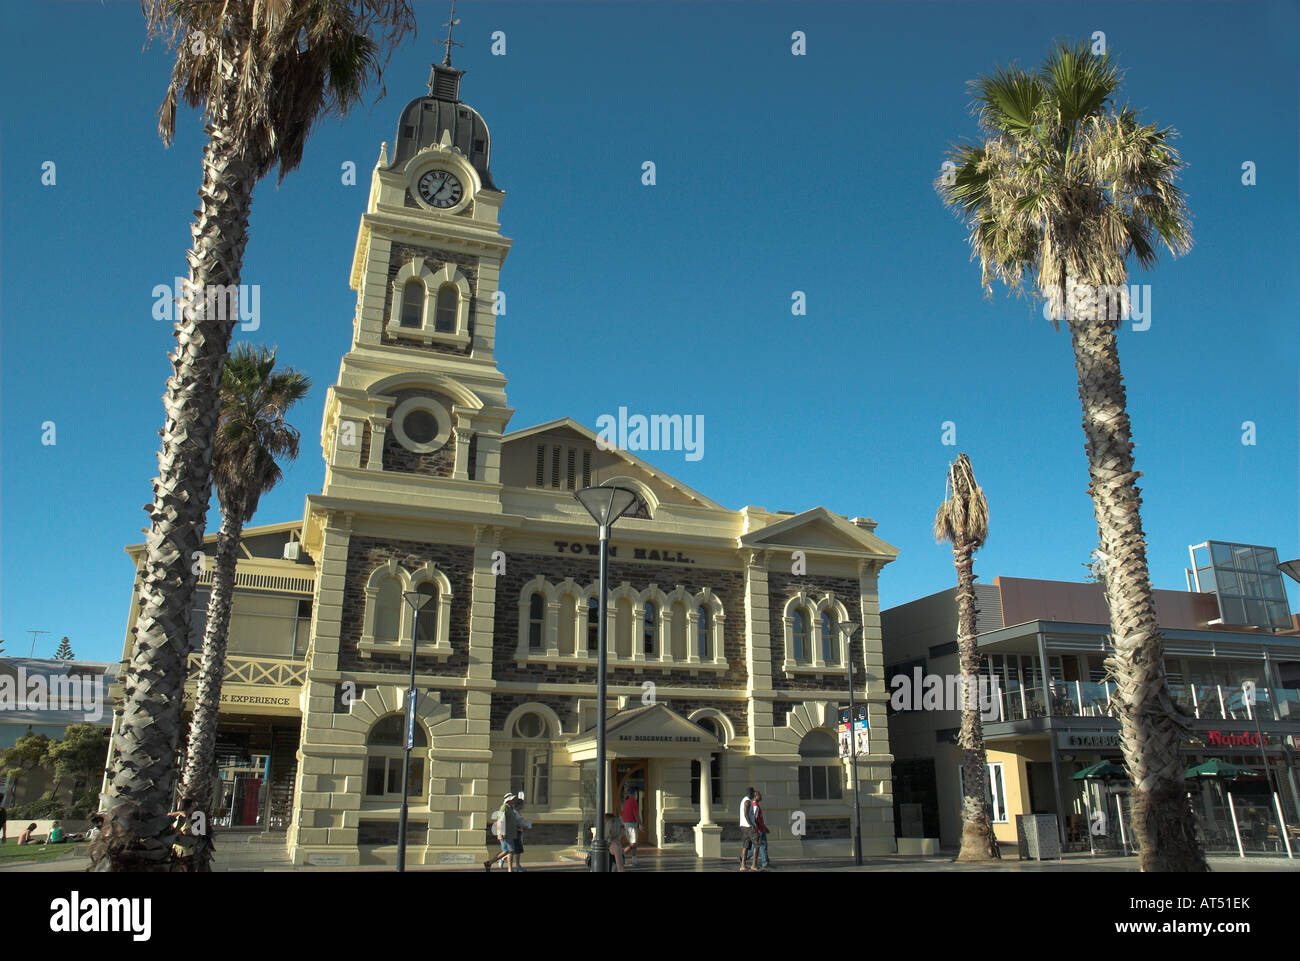 Vue générale de la ville de Glenelg Hall à Moseley Square, Adelaide, Australie du Sud Banque D'Images